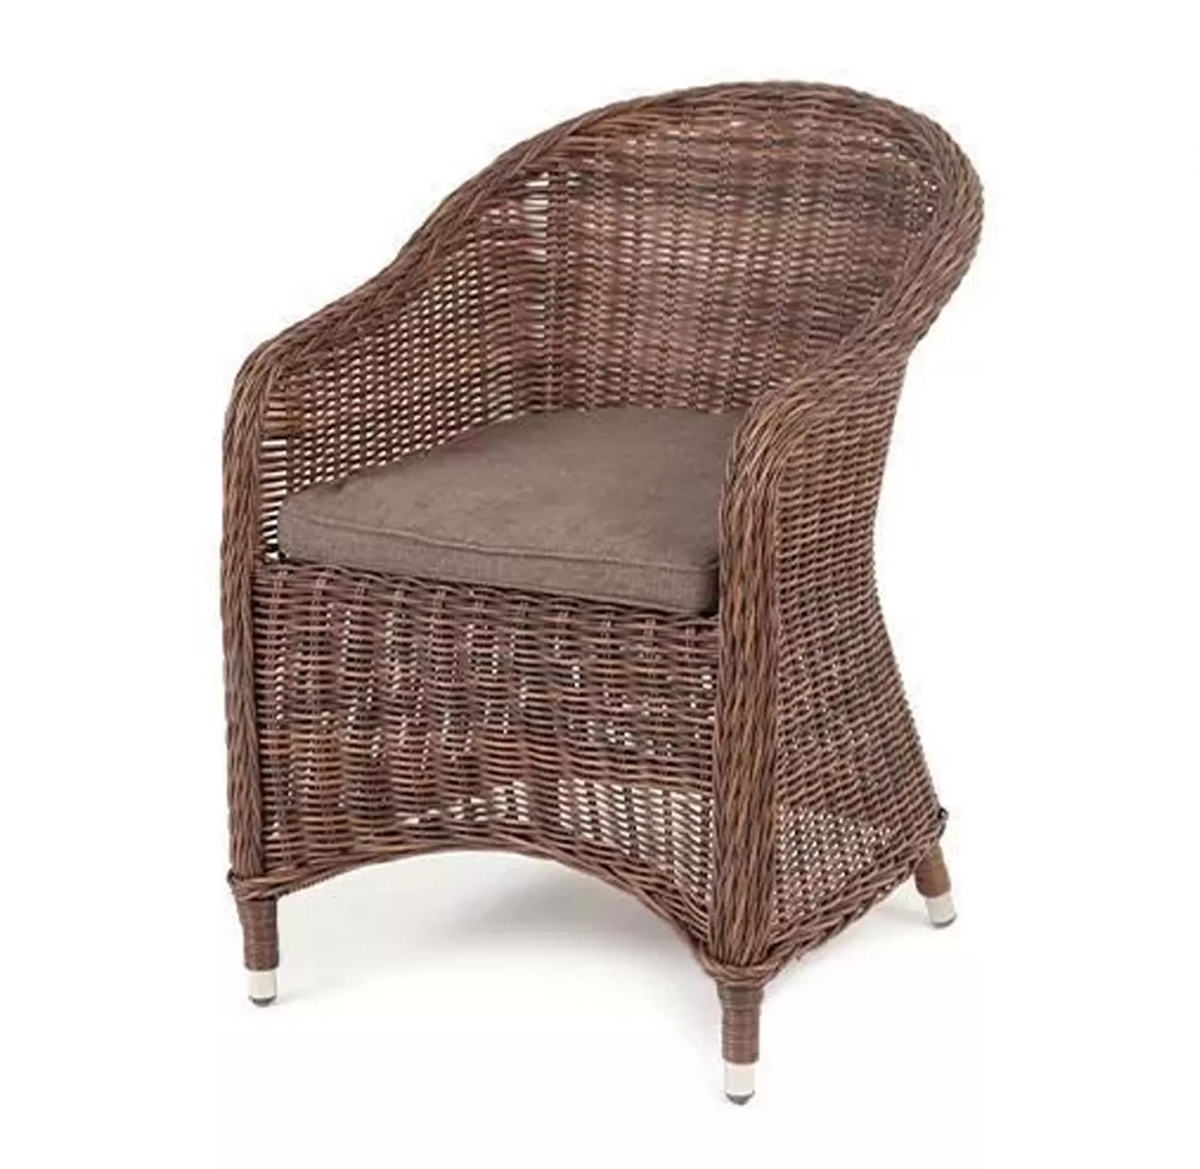 Плетеное кресло Равенна коричневое серьги со съемным элементом